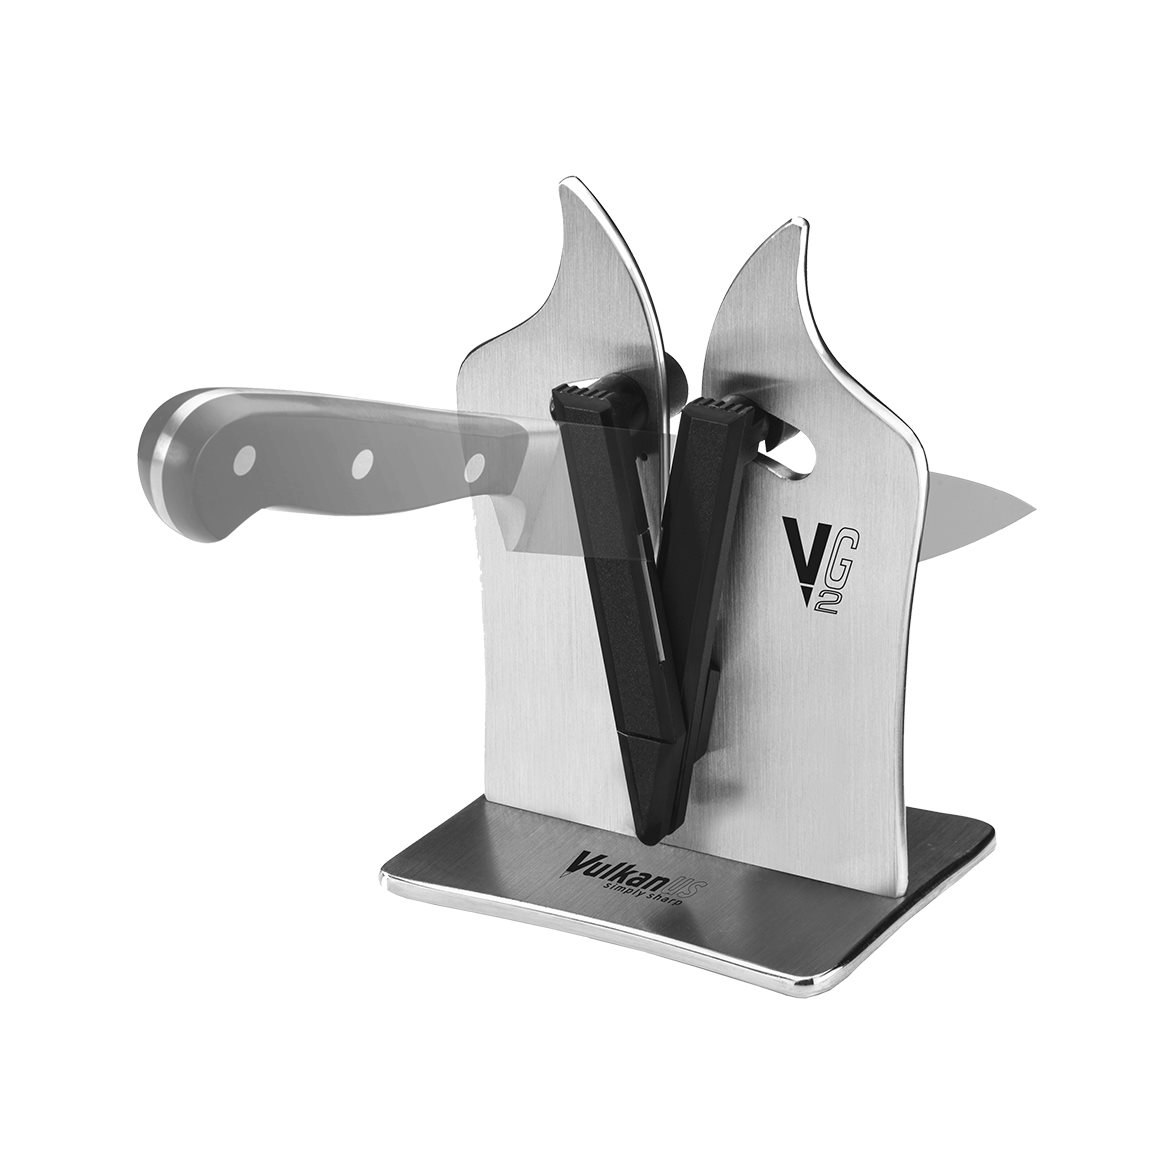 https://royaldesign.co.uk/image/6/vulkanus-vulkanus-vg2-professional-knife-sharpener-1?w=800&quality=80